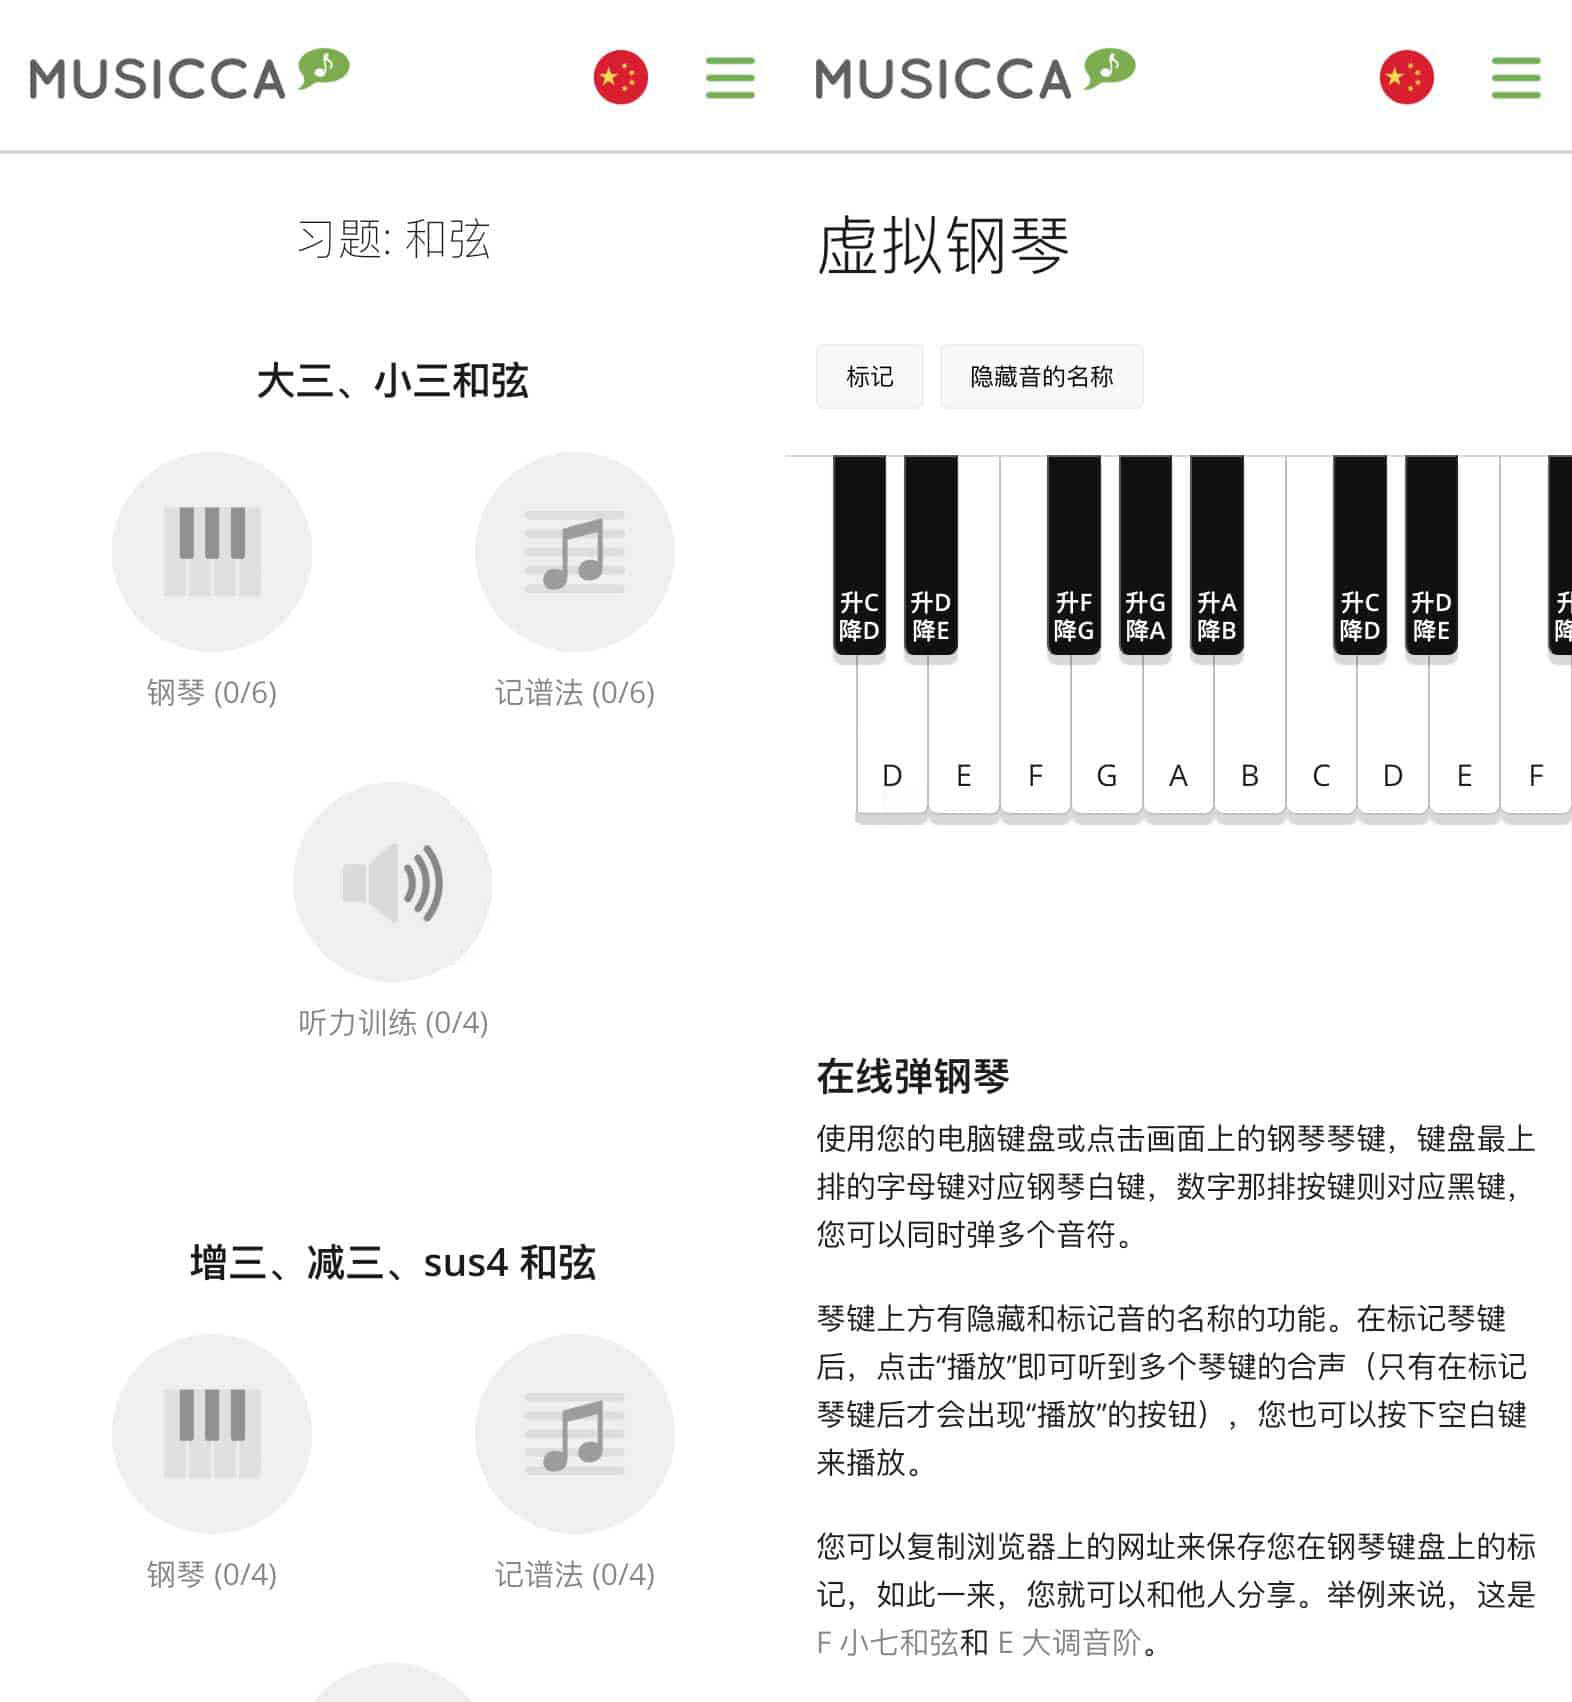 免费且充满乐趣音乐学习工具平台-Musicca